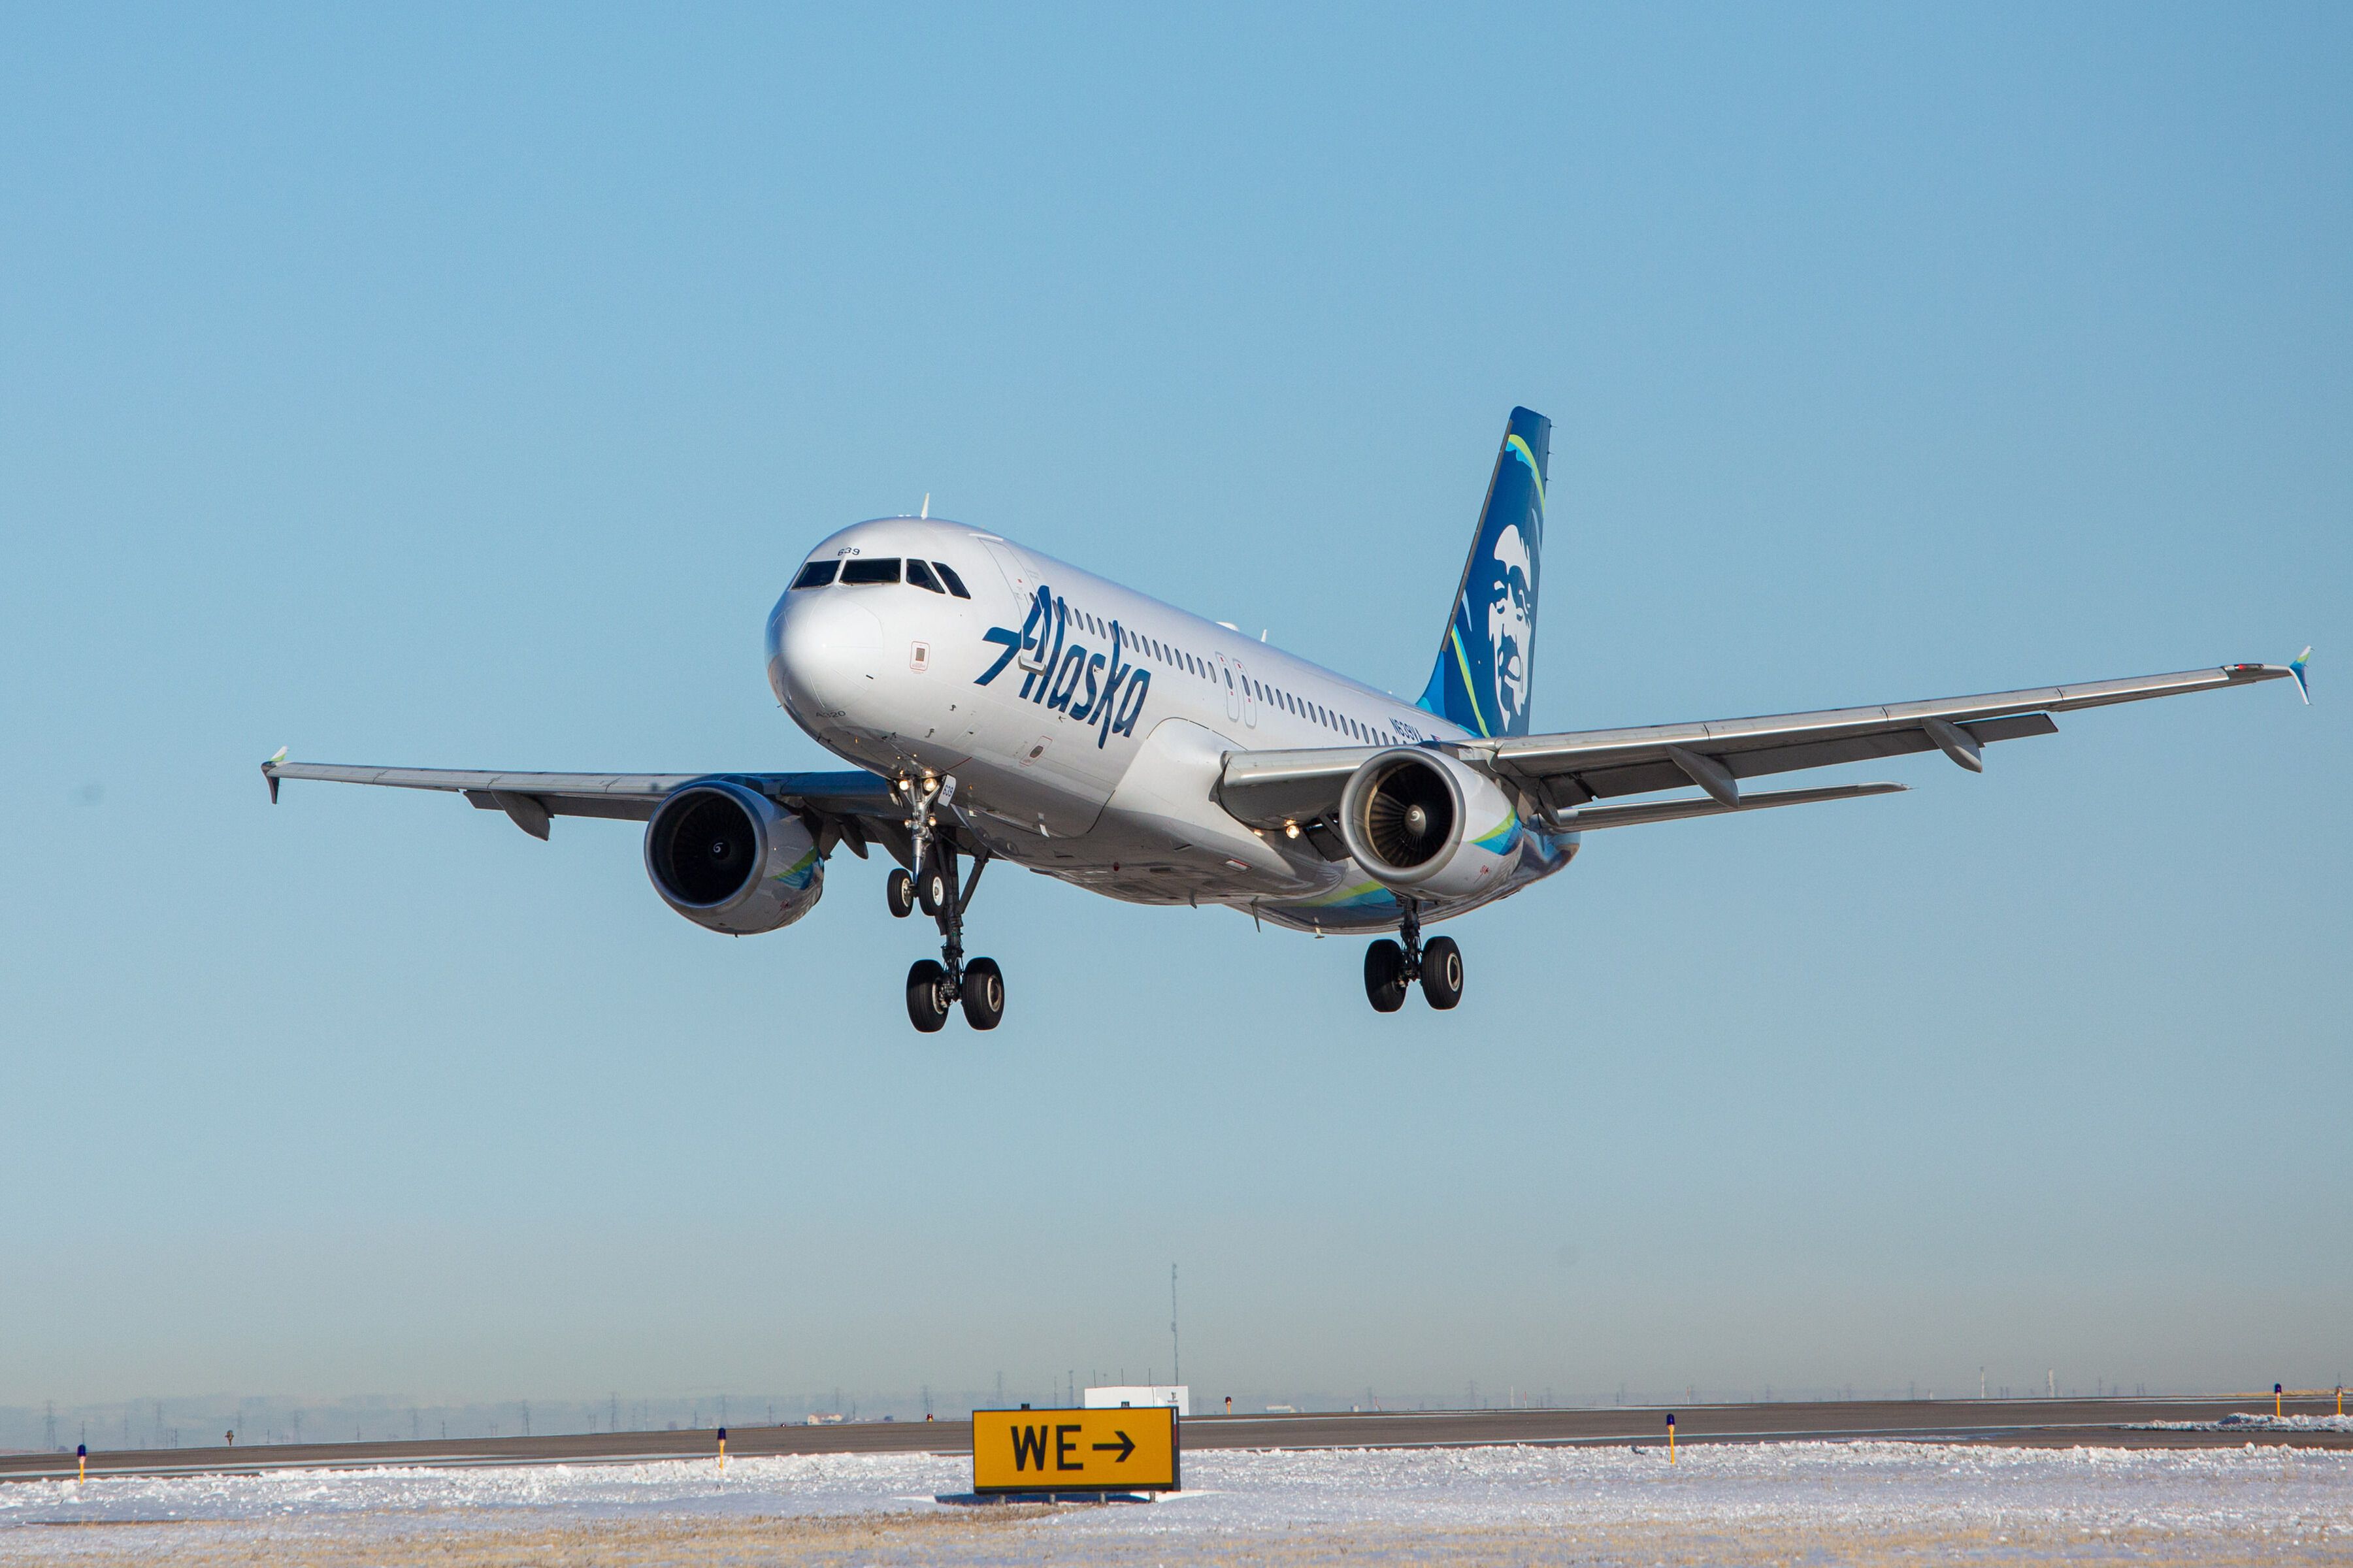 An Alaska Airlines plane landing